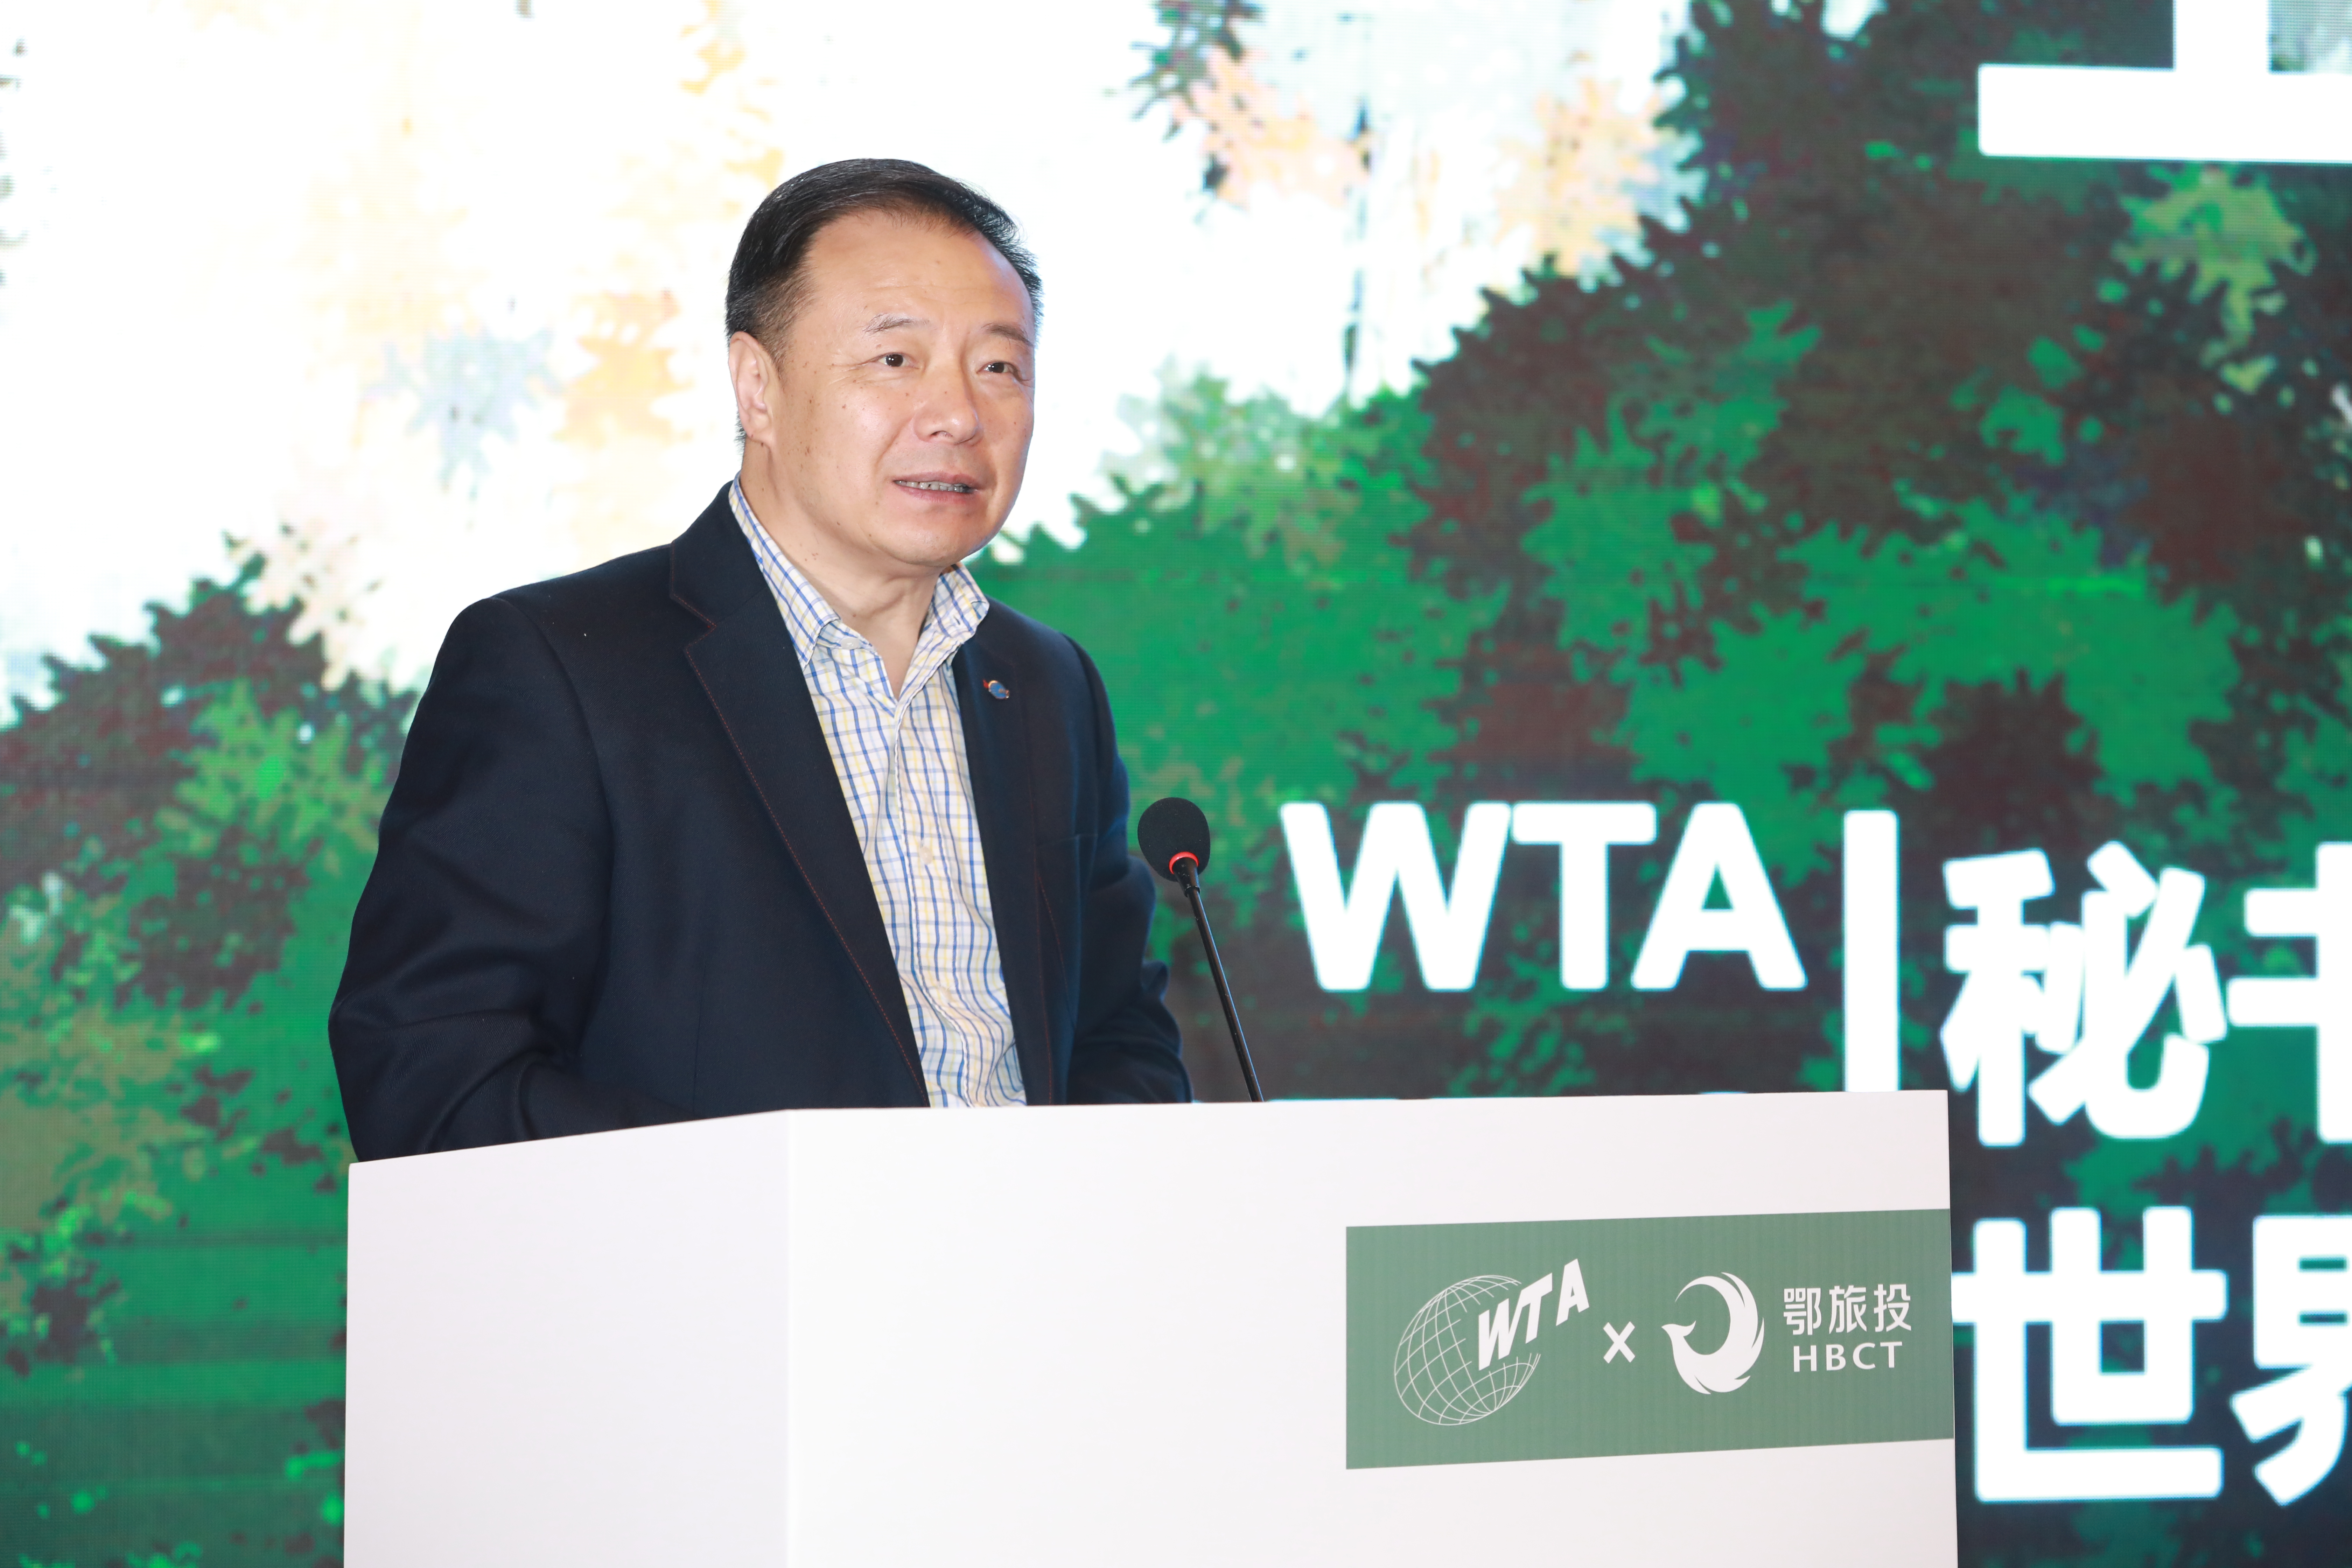 Liu Shijun, Secretary General of the WTA